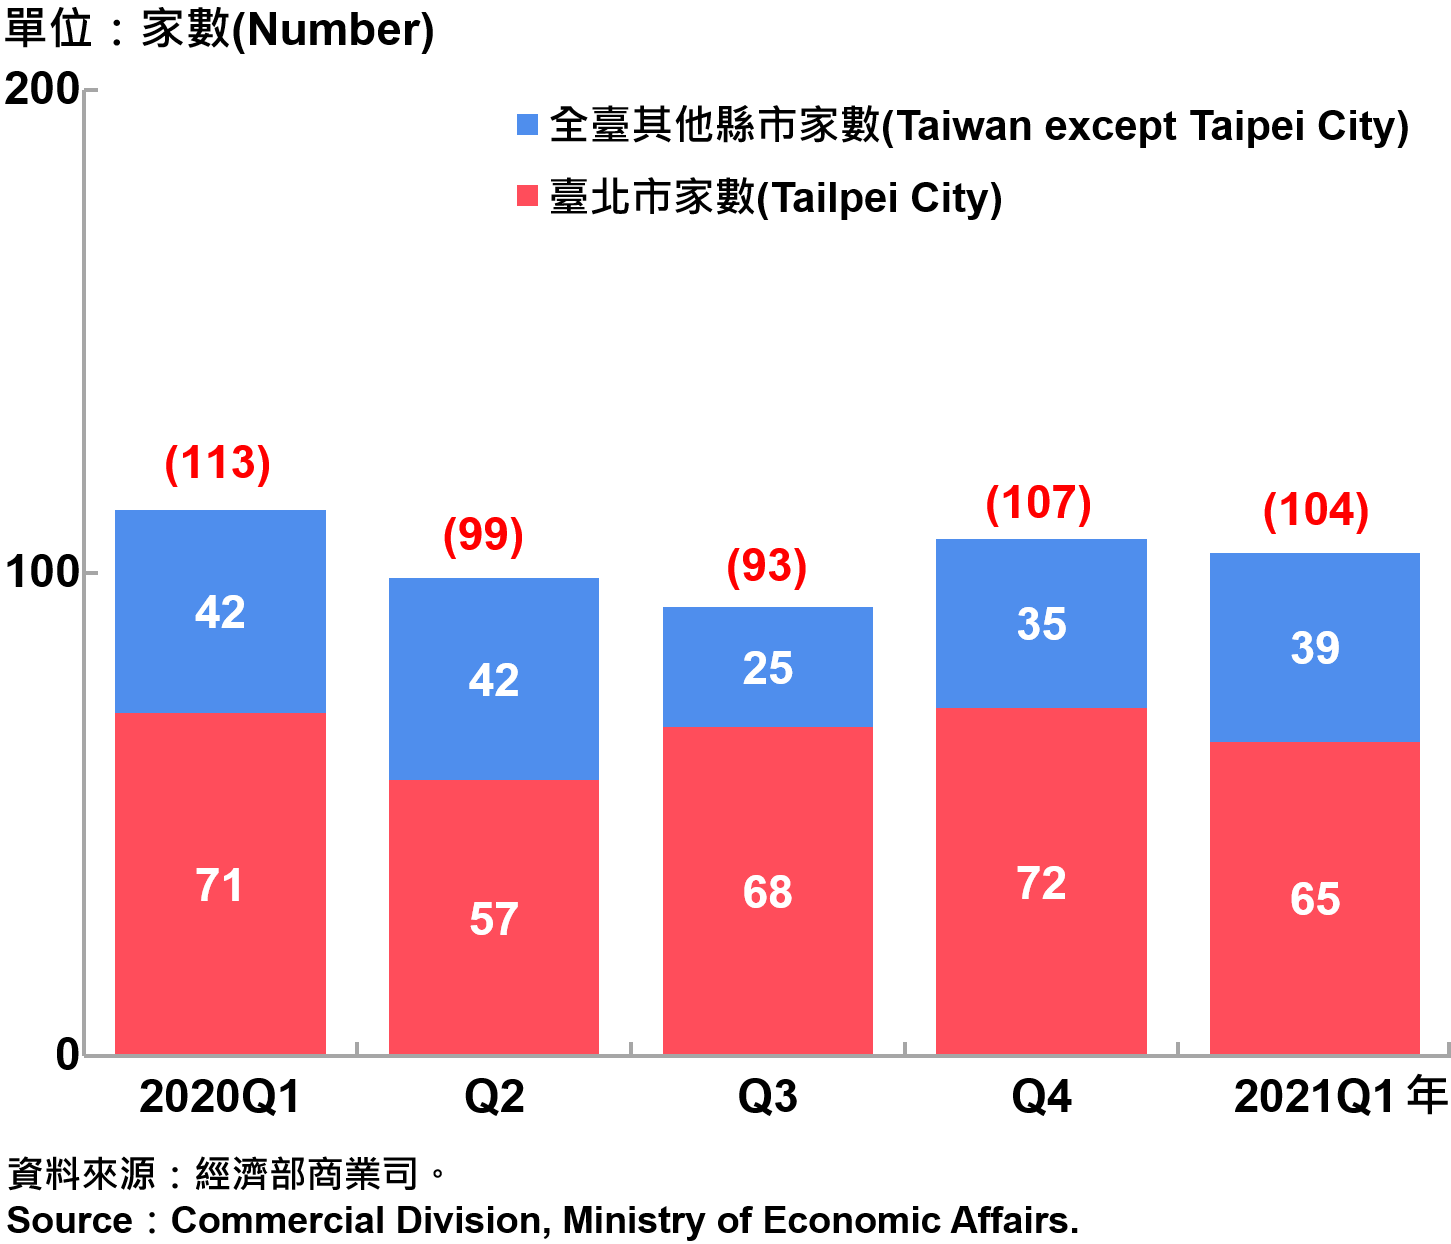 臺北市外商公司新設立家數—20201Q1 Number of Newly Established Foreign Companies in Taipei City—2021Q1